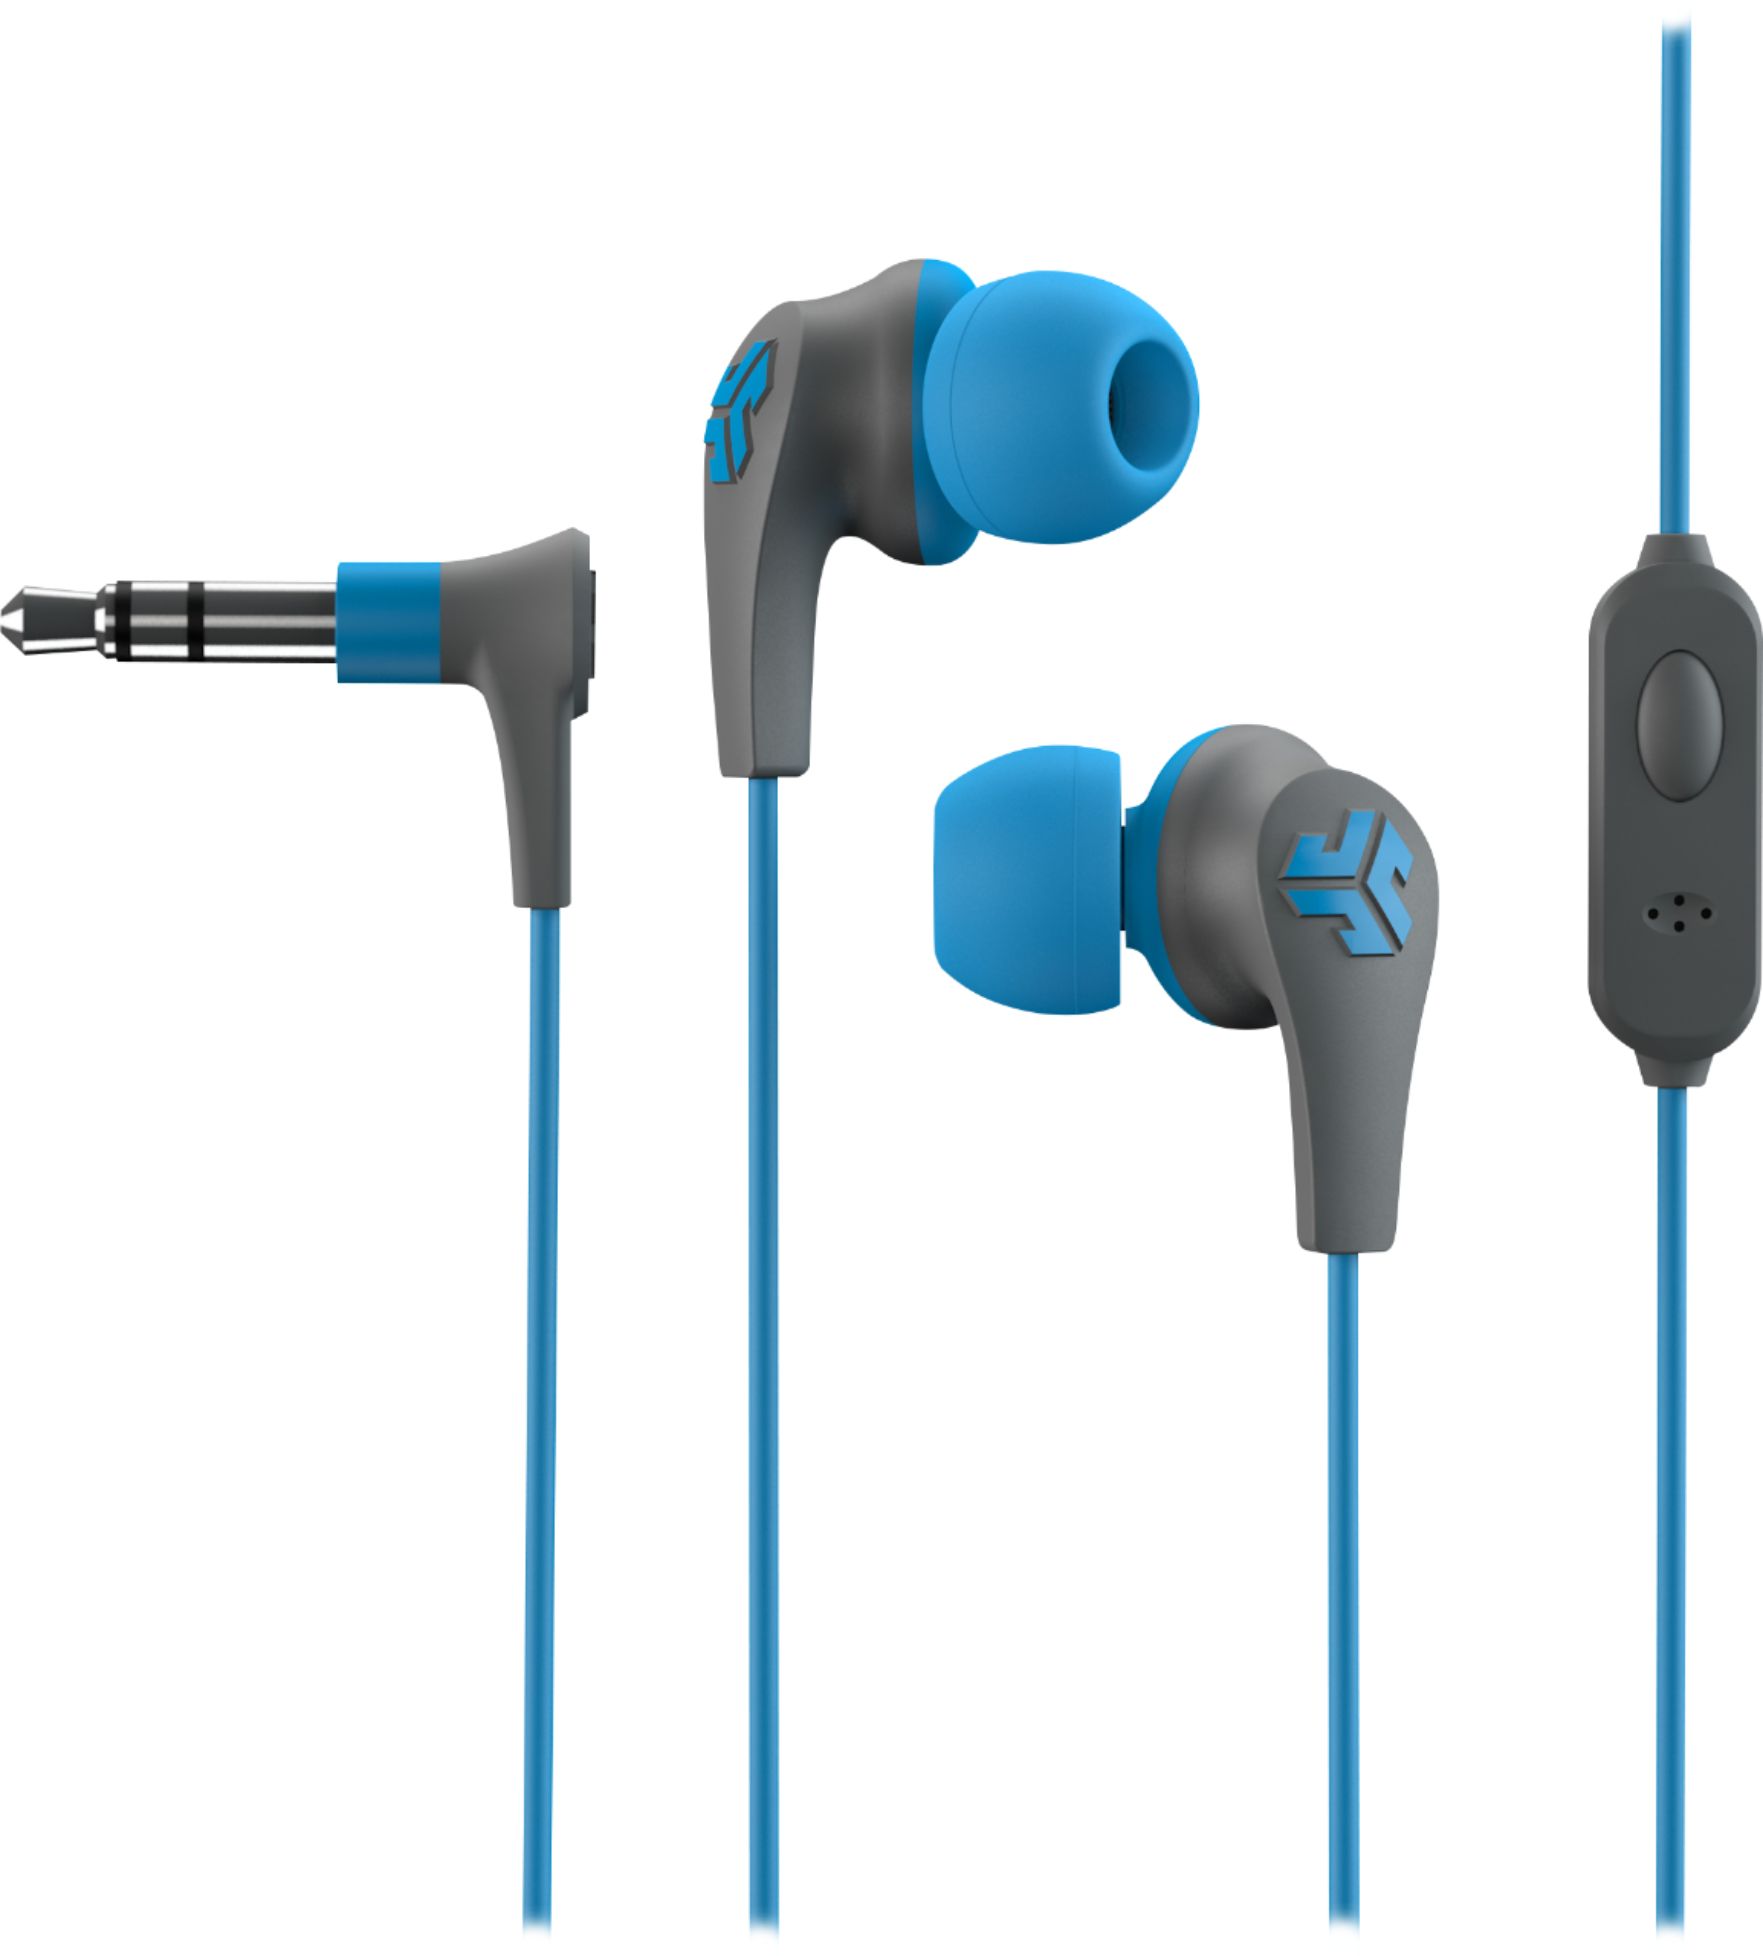 jlab audio jbuds pro bluetooth earbuds